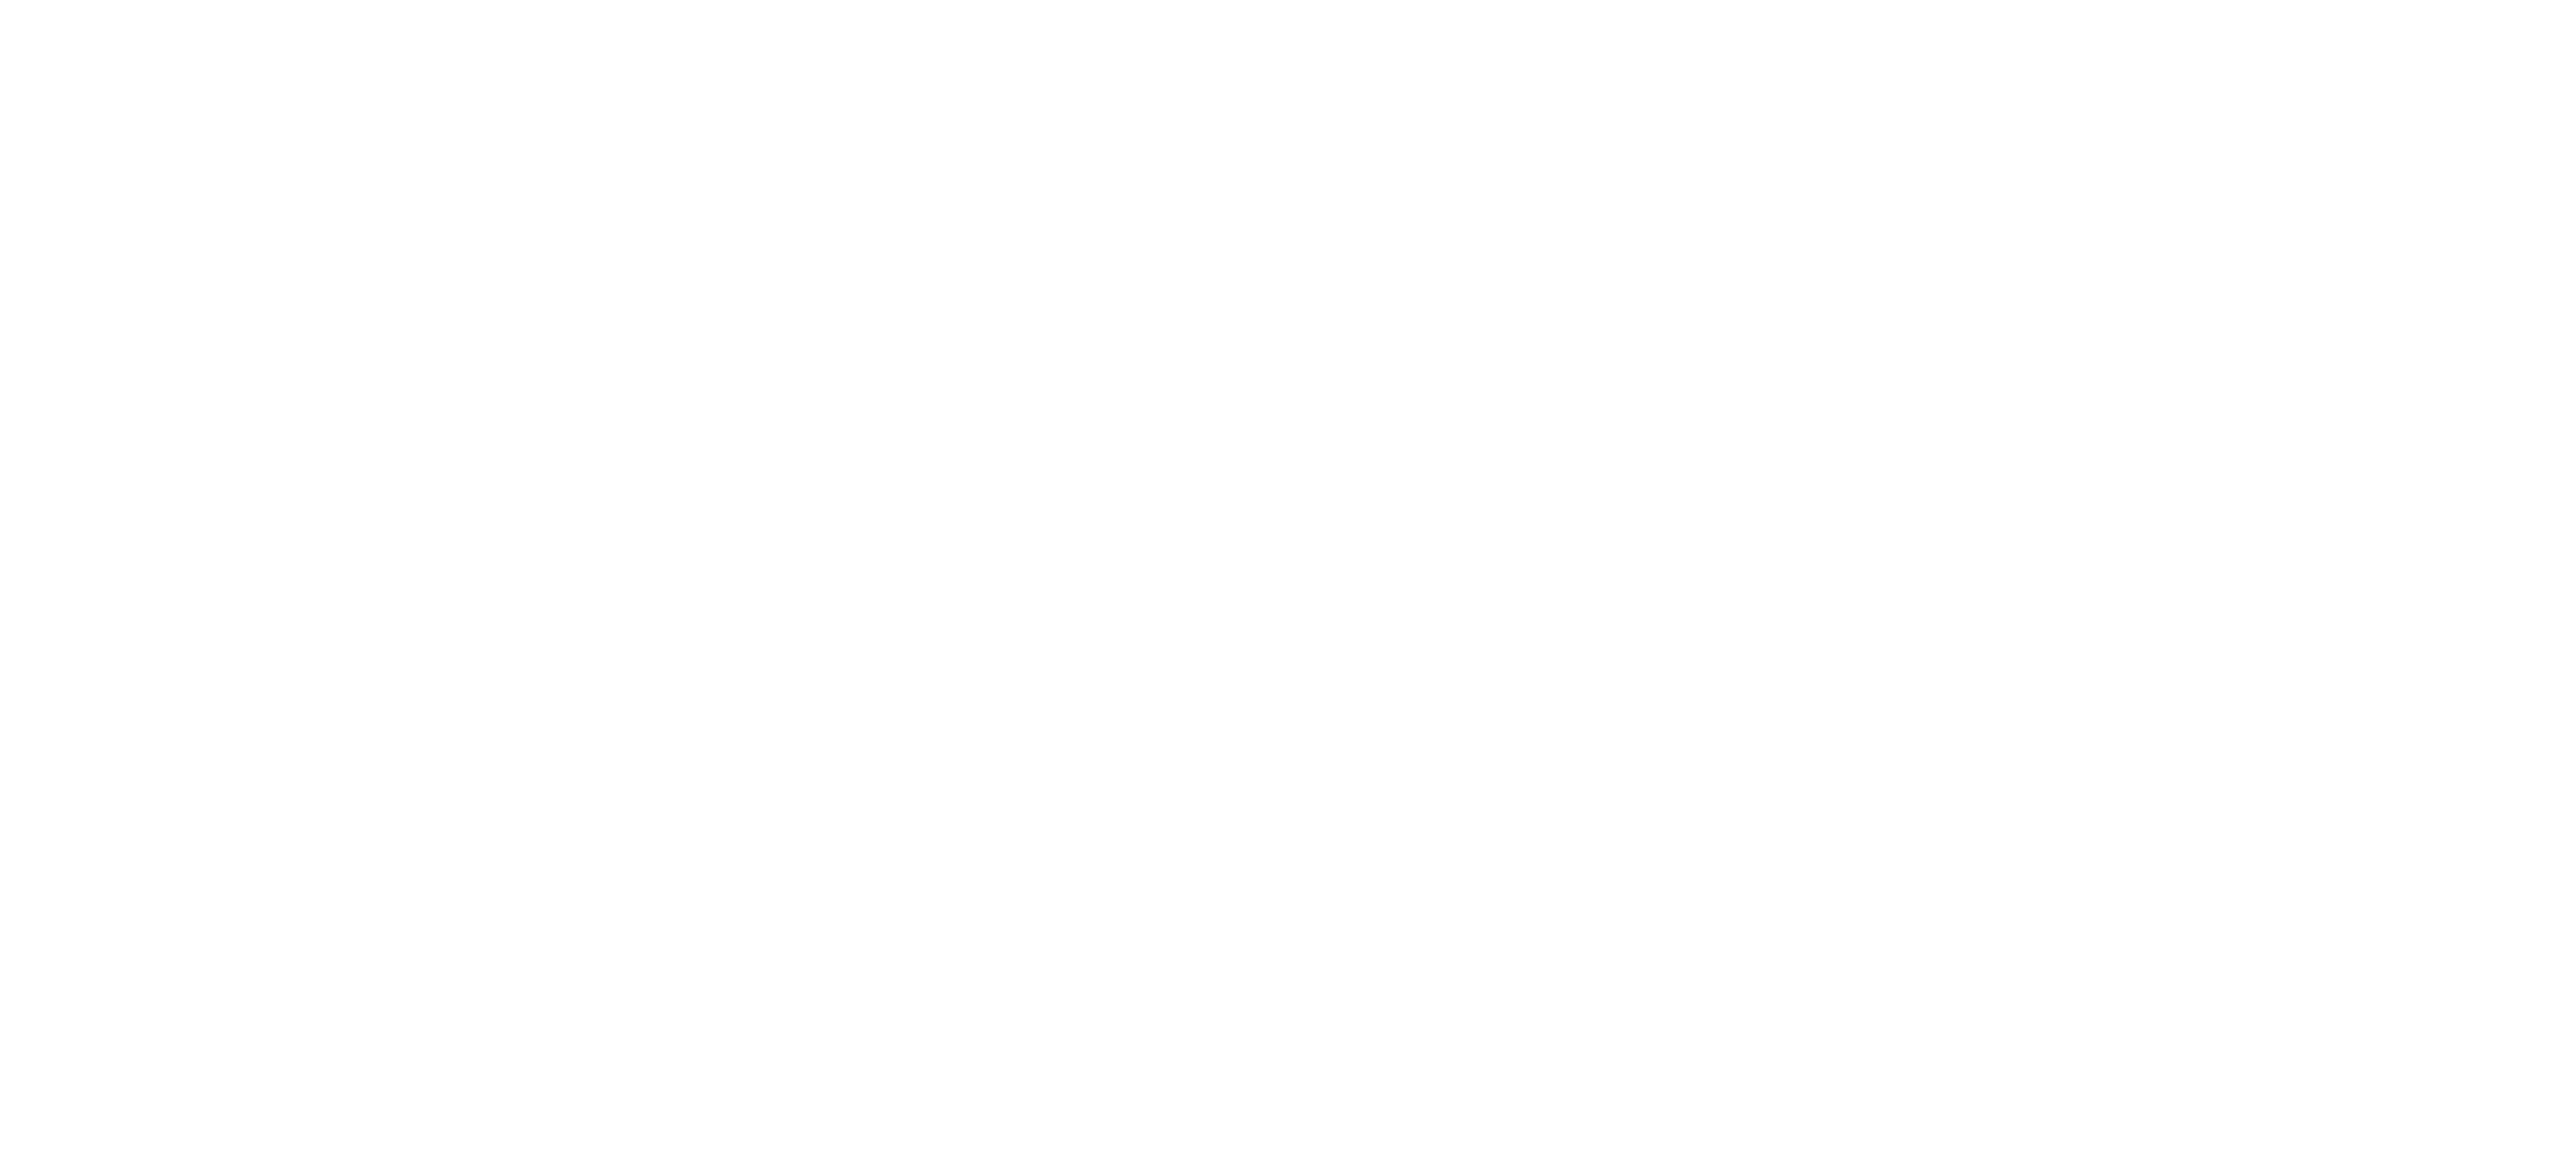 E-infinite